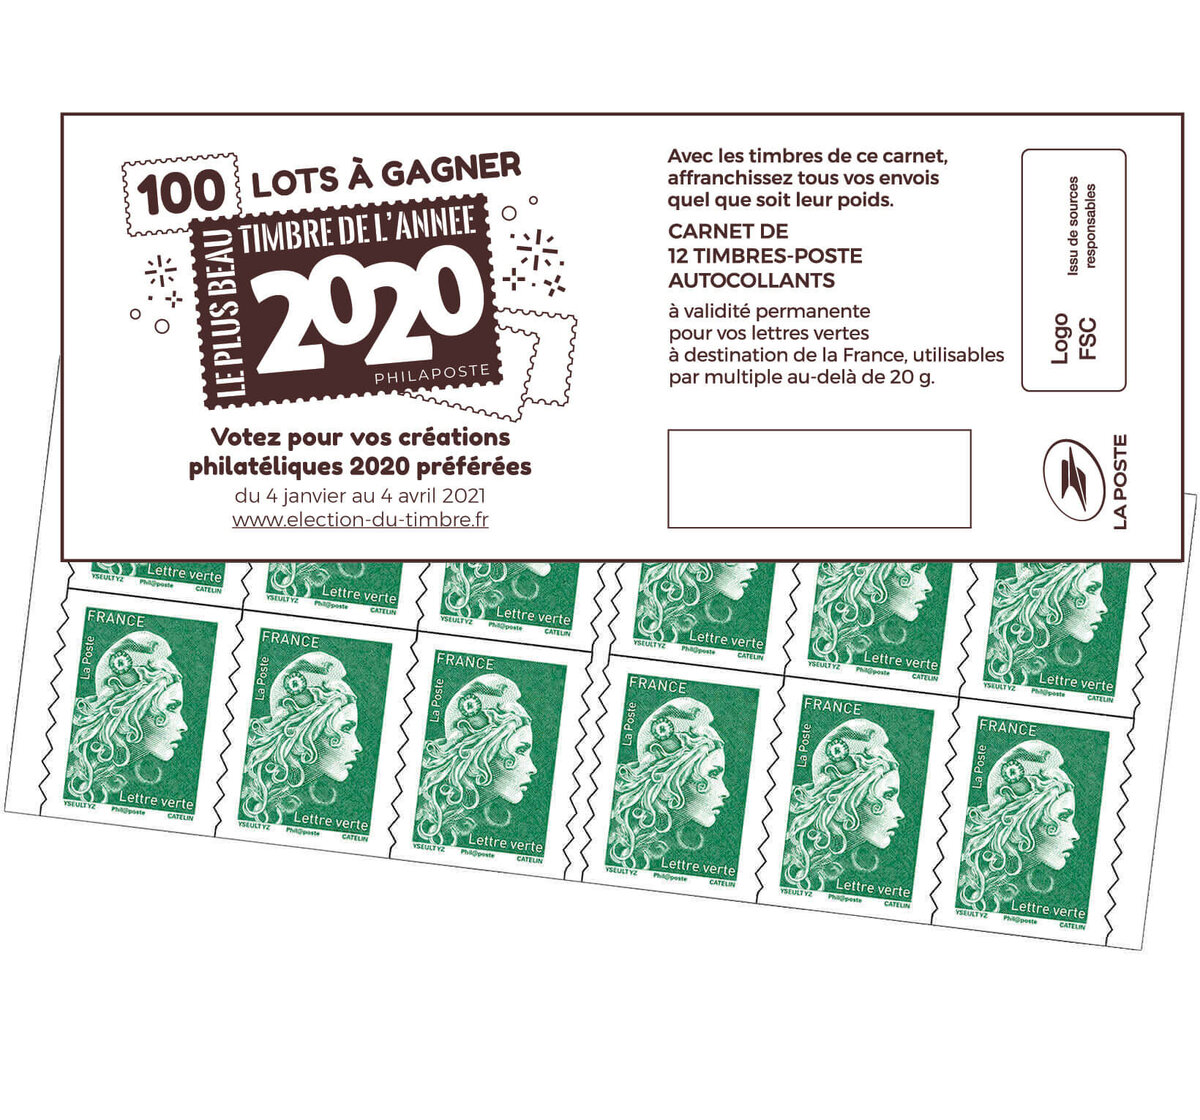 Carnet 20 timbres Marianne l'engagée - Lettre verte - La Poste